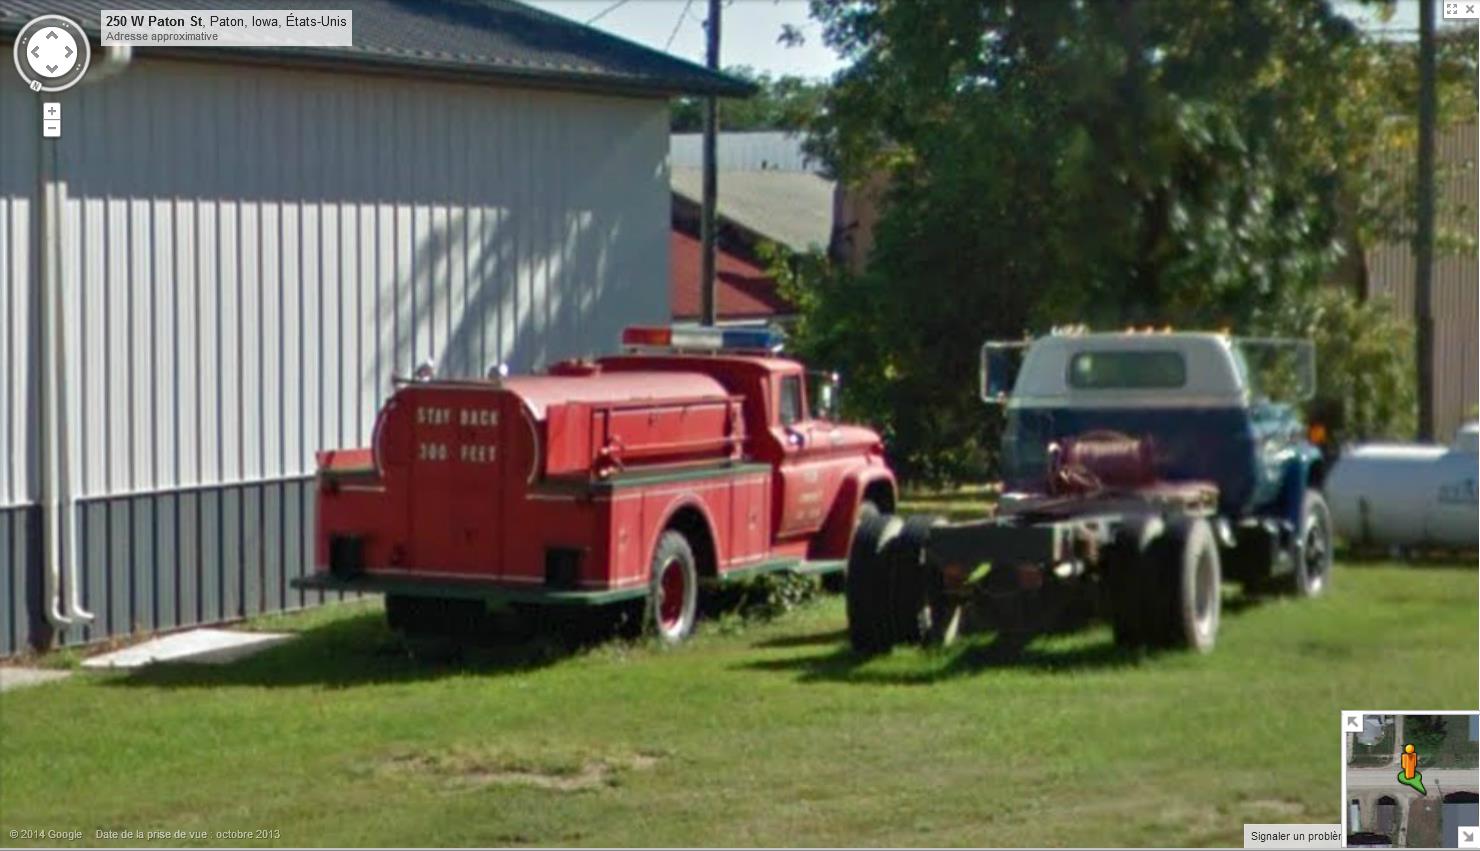  STREET VIEW : les camions de pompiers  - Page 5 653229pompiers1